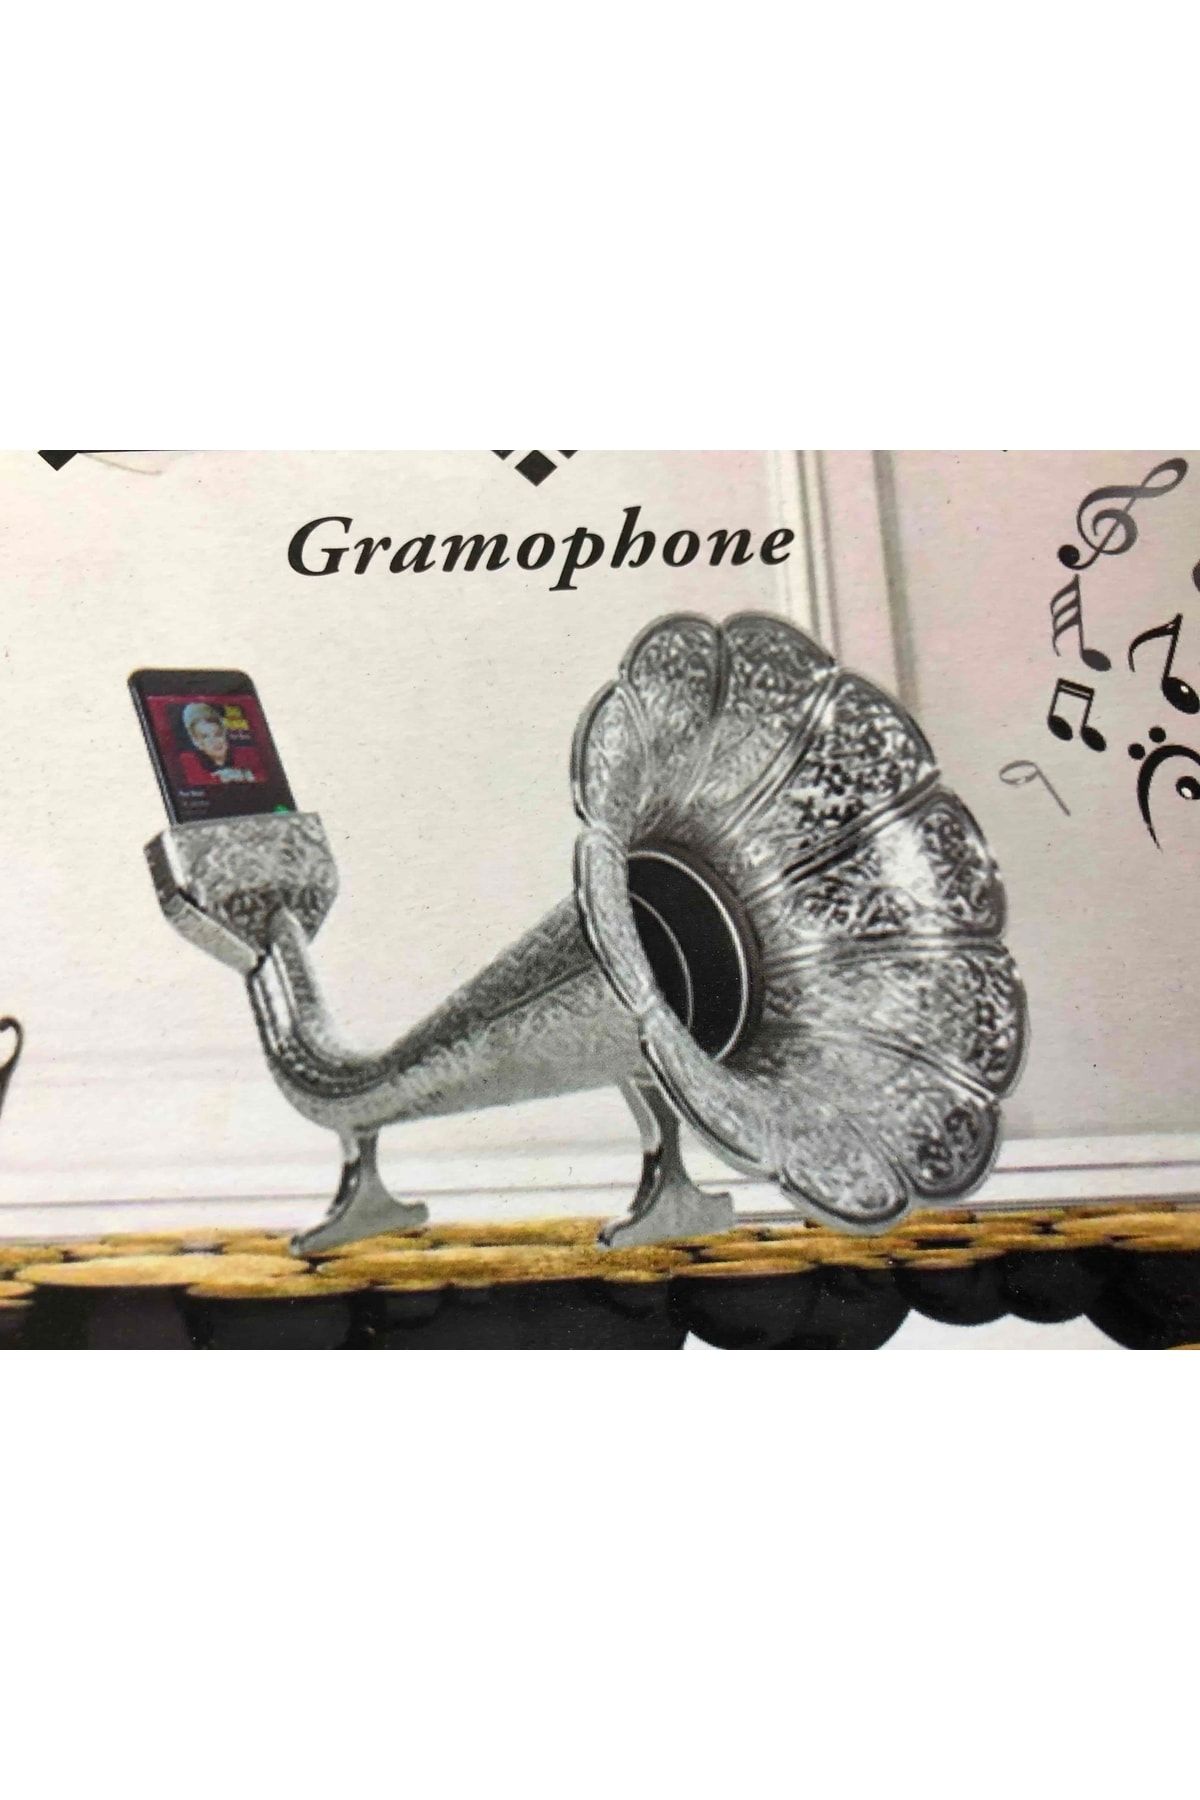 Kelepir Fırsatlar Cep Telefenlarına Uygun Ses Yükseltici Parlak Gümüş Otantik Osmanlı Süslemeli Gramofoni